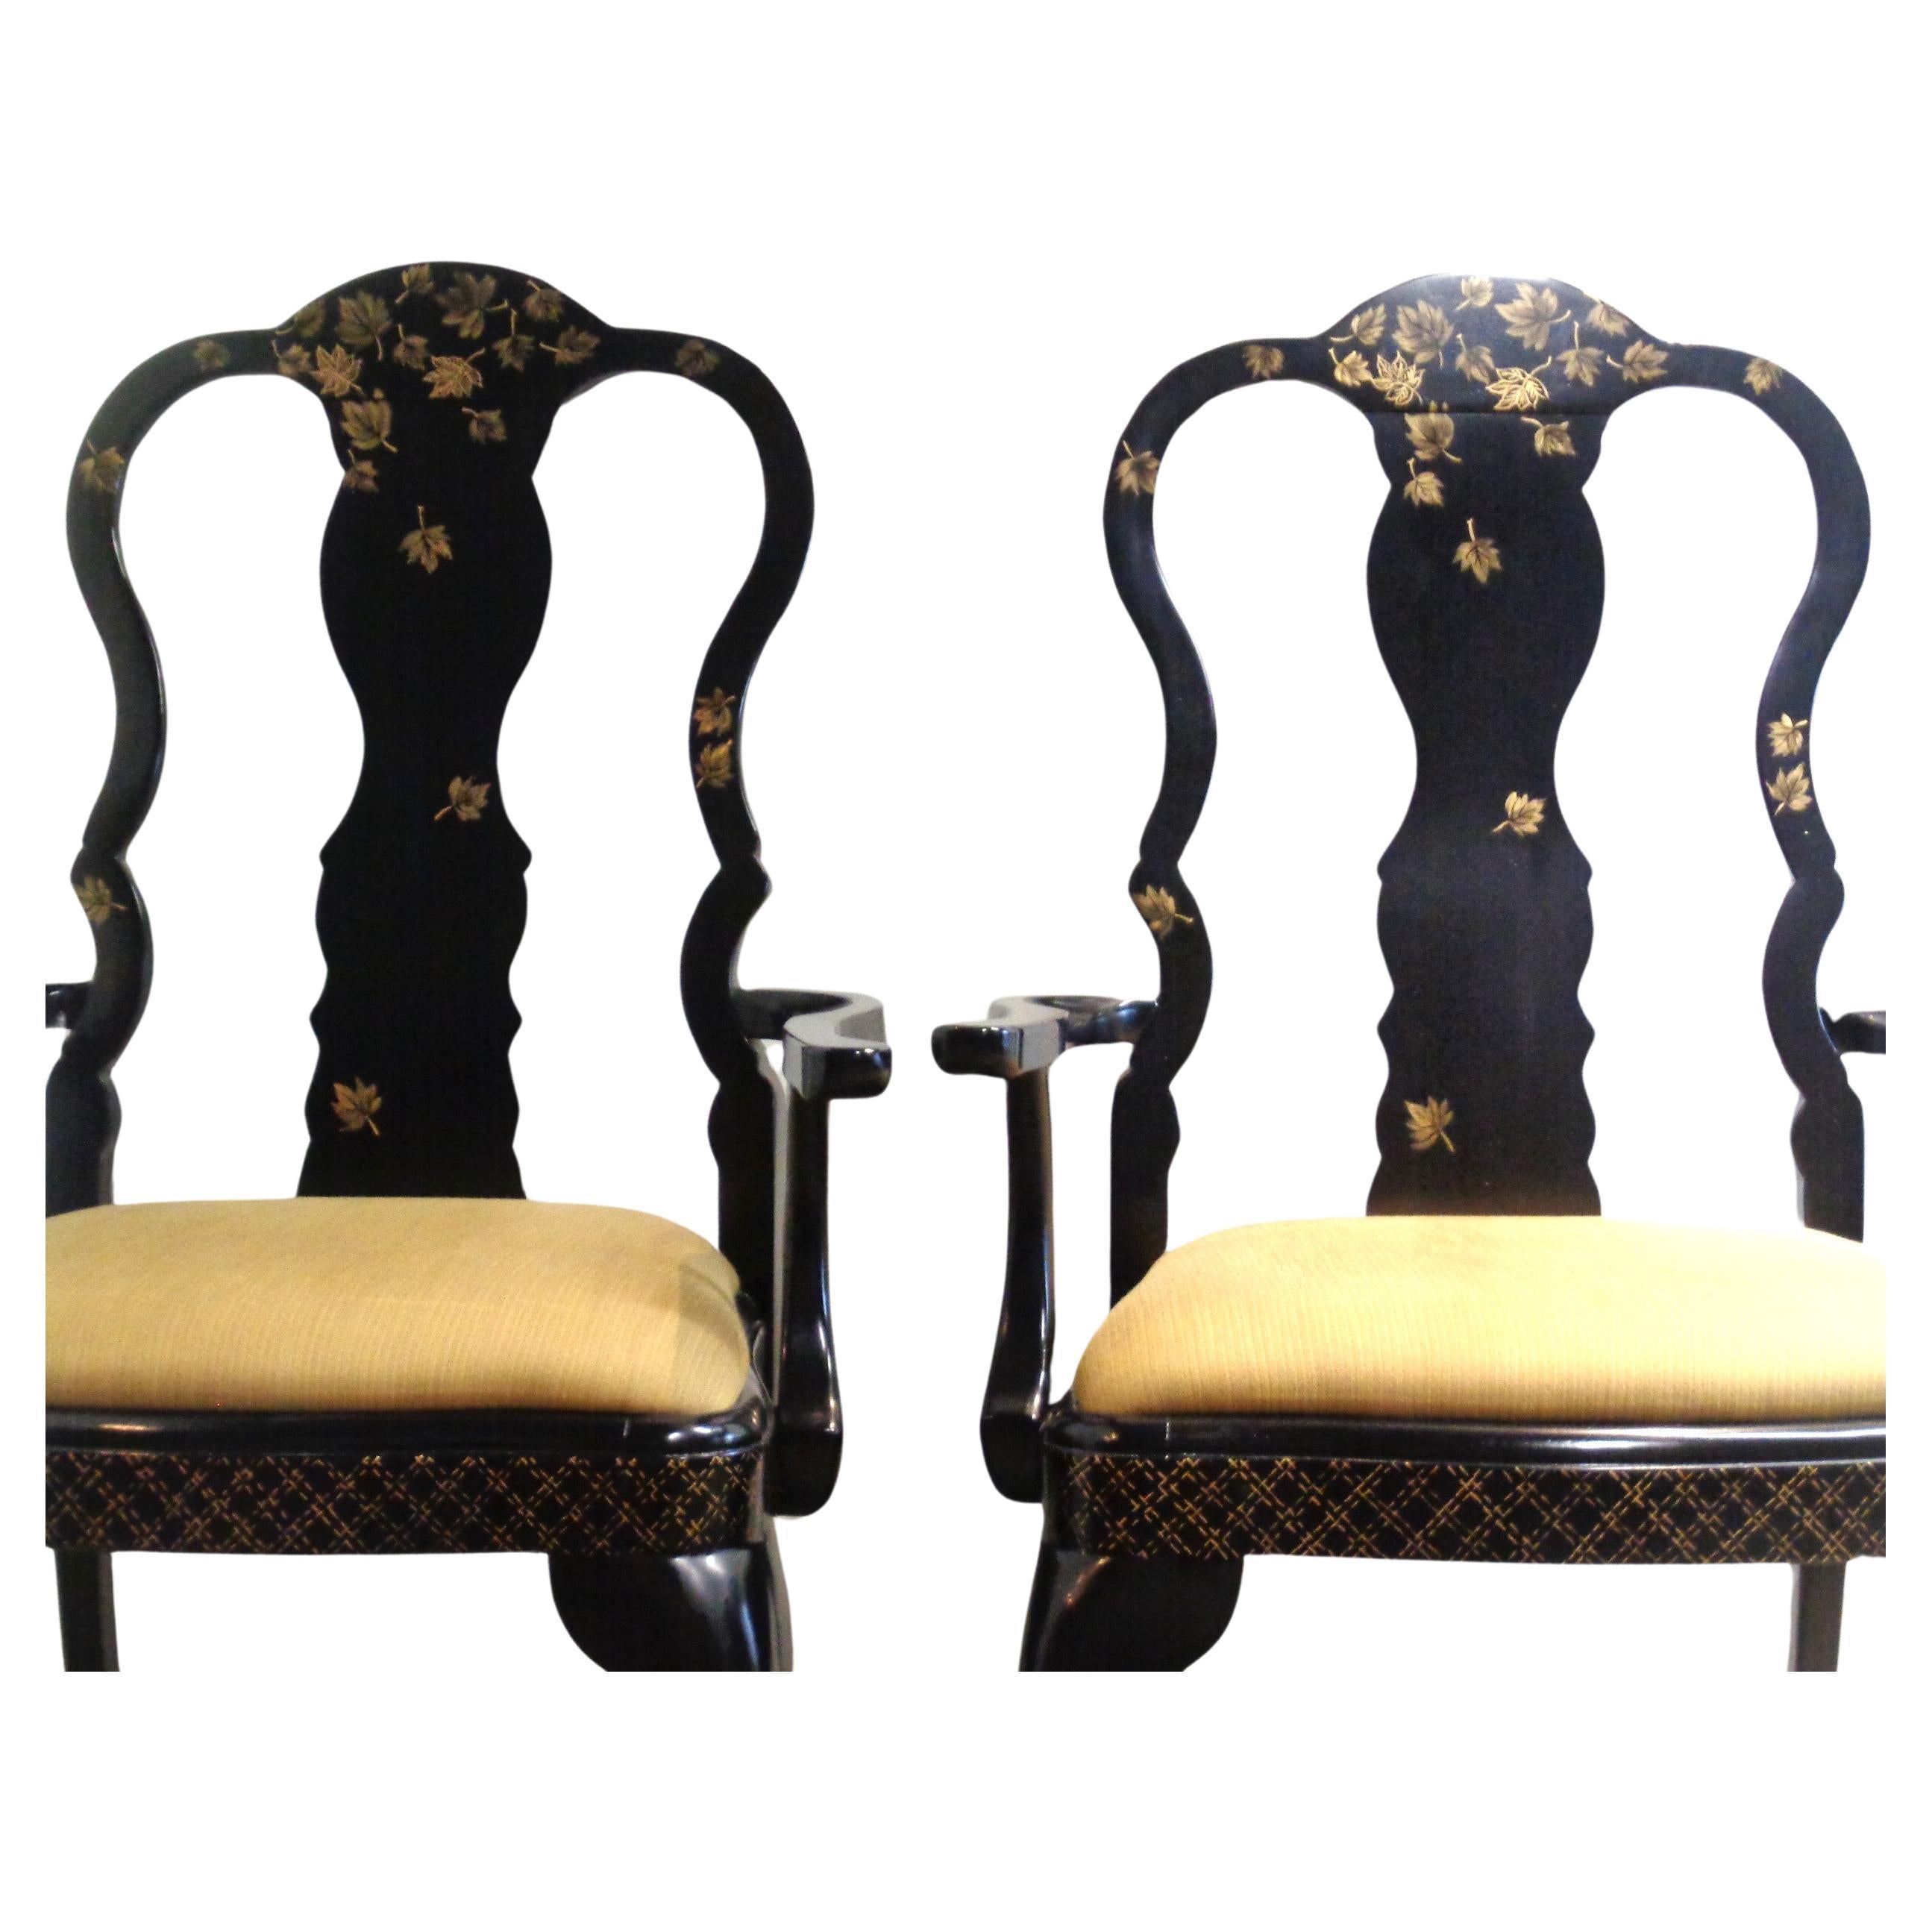 Ein Paar schwarz lackierte Sessel im Queen-Anne-Stil mit wunderschön glänzender Oberfläche und fein vergoldetem Chinoiserie-Dekor mit schwebenden Blättern und Kreuzschraffuren. Messen Sie 42 1/2